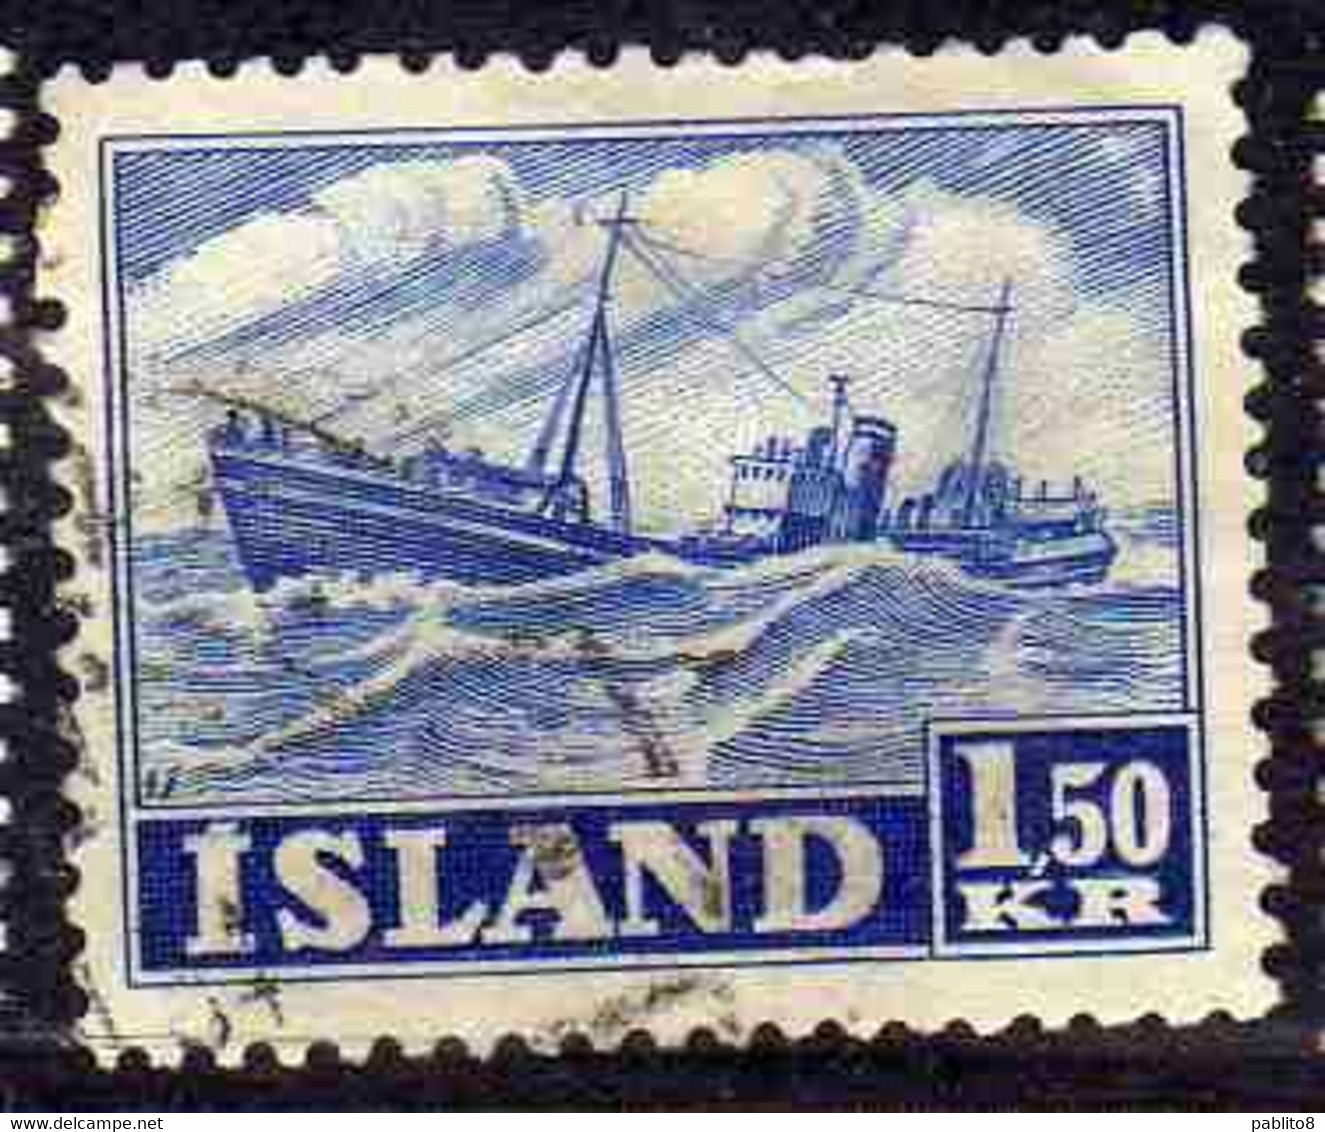 ISLANDA ICELAND ISLANDE 1950 1954 TRAWLER 1.50k USED USATO OBLITERE' - Usados